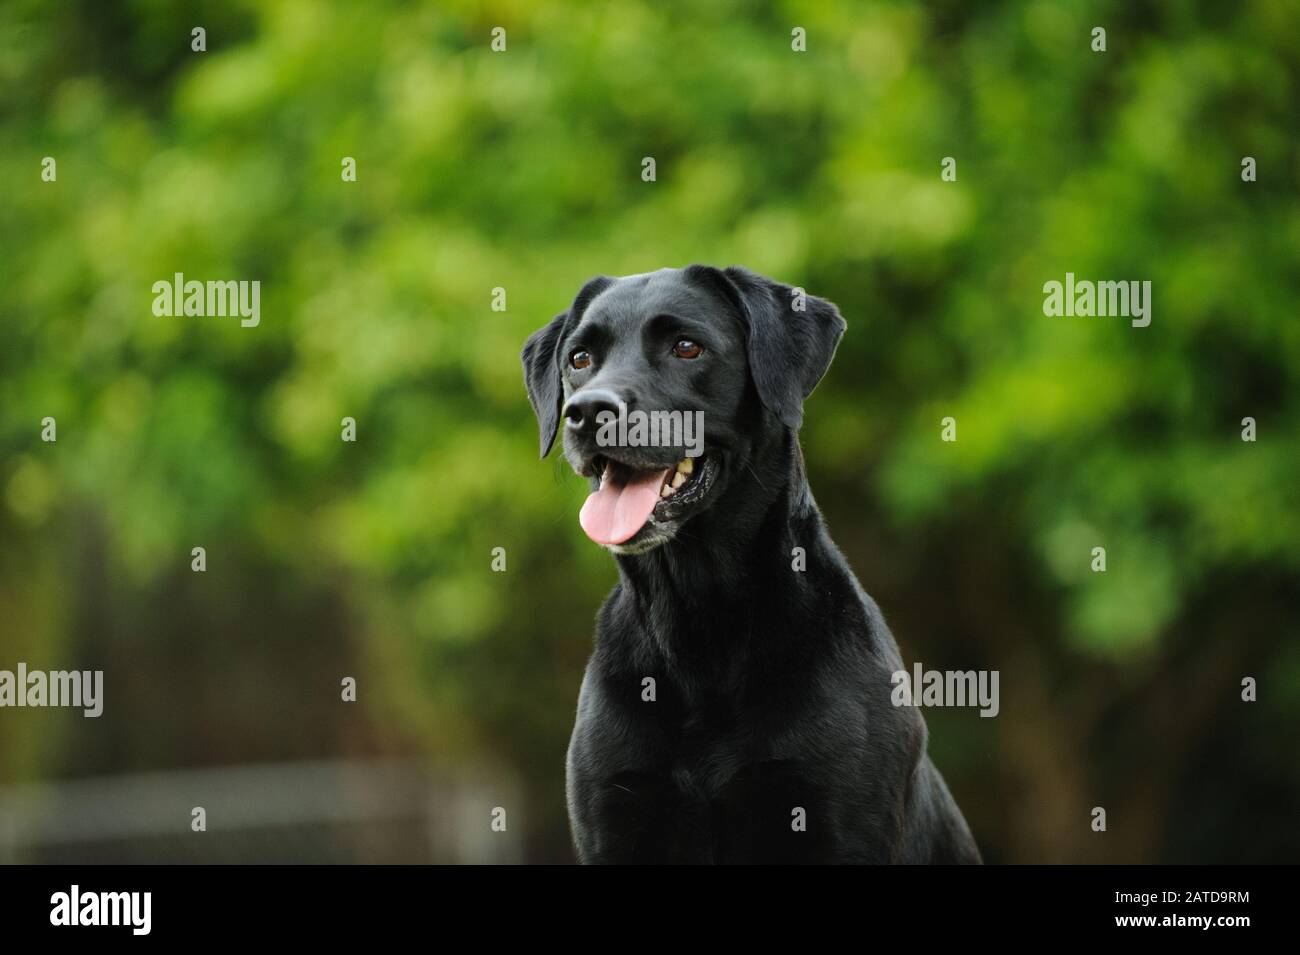 Black Labrador Retriever dog Stock Photo